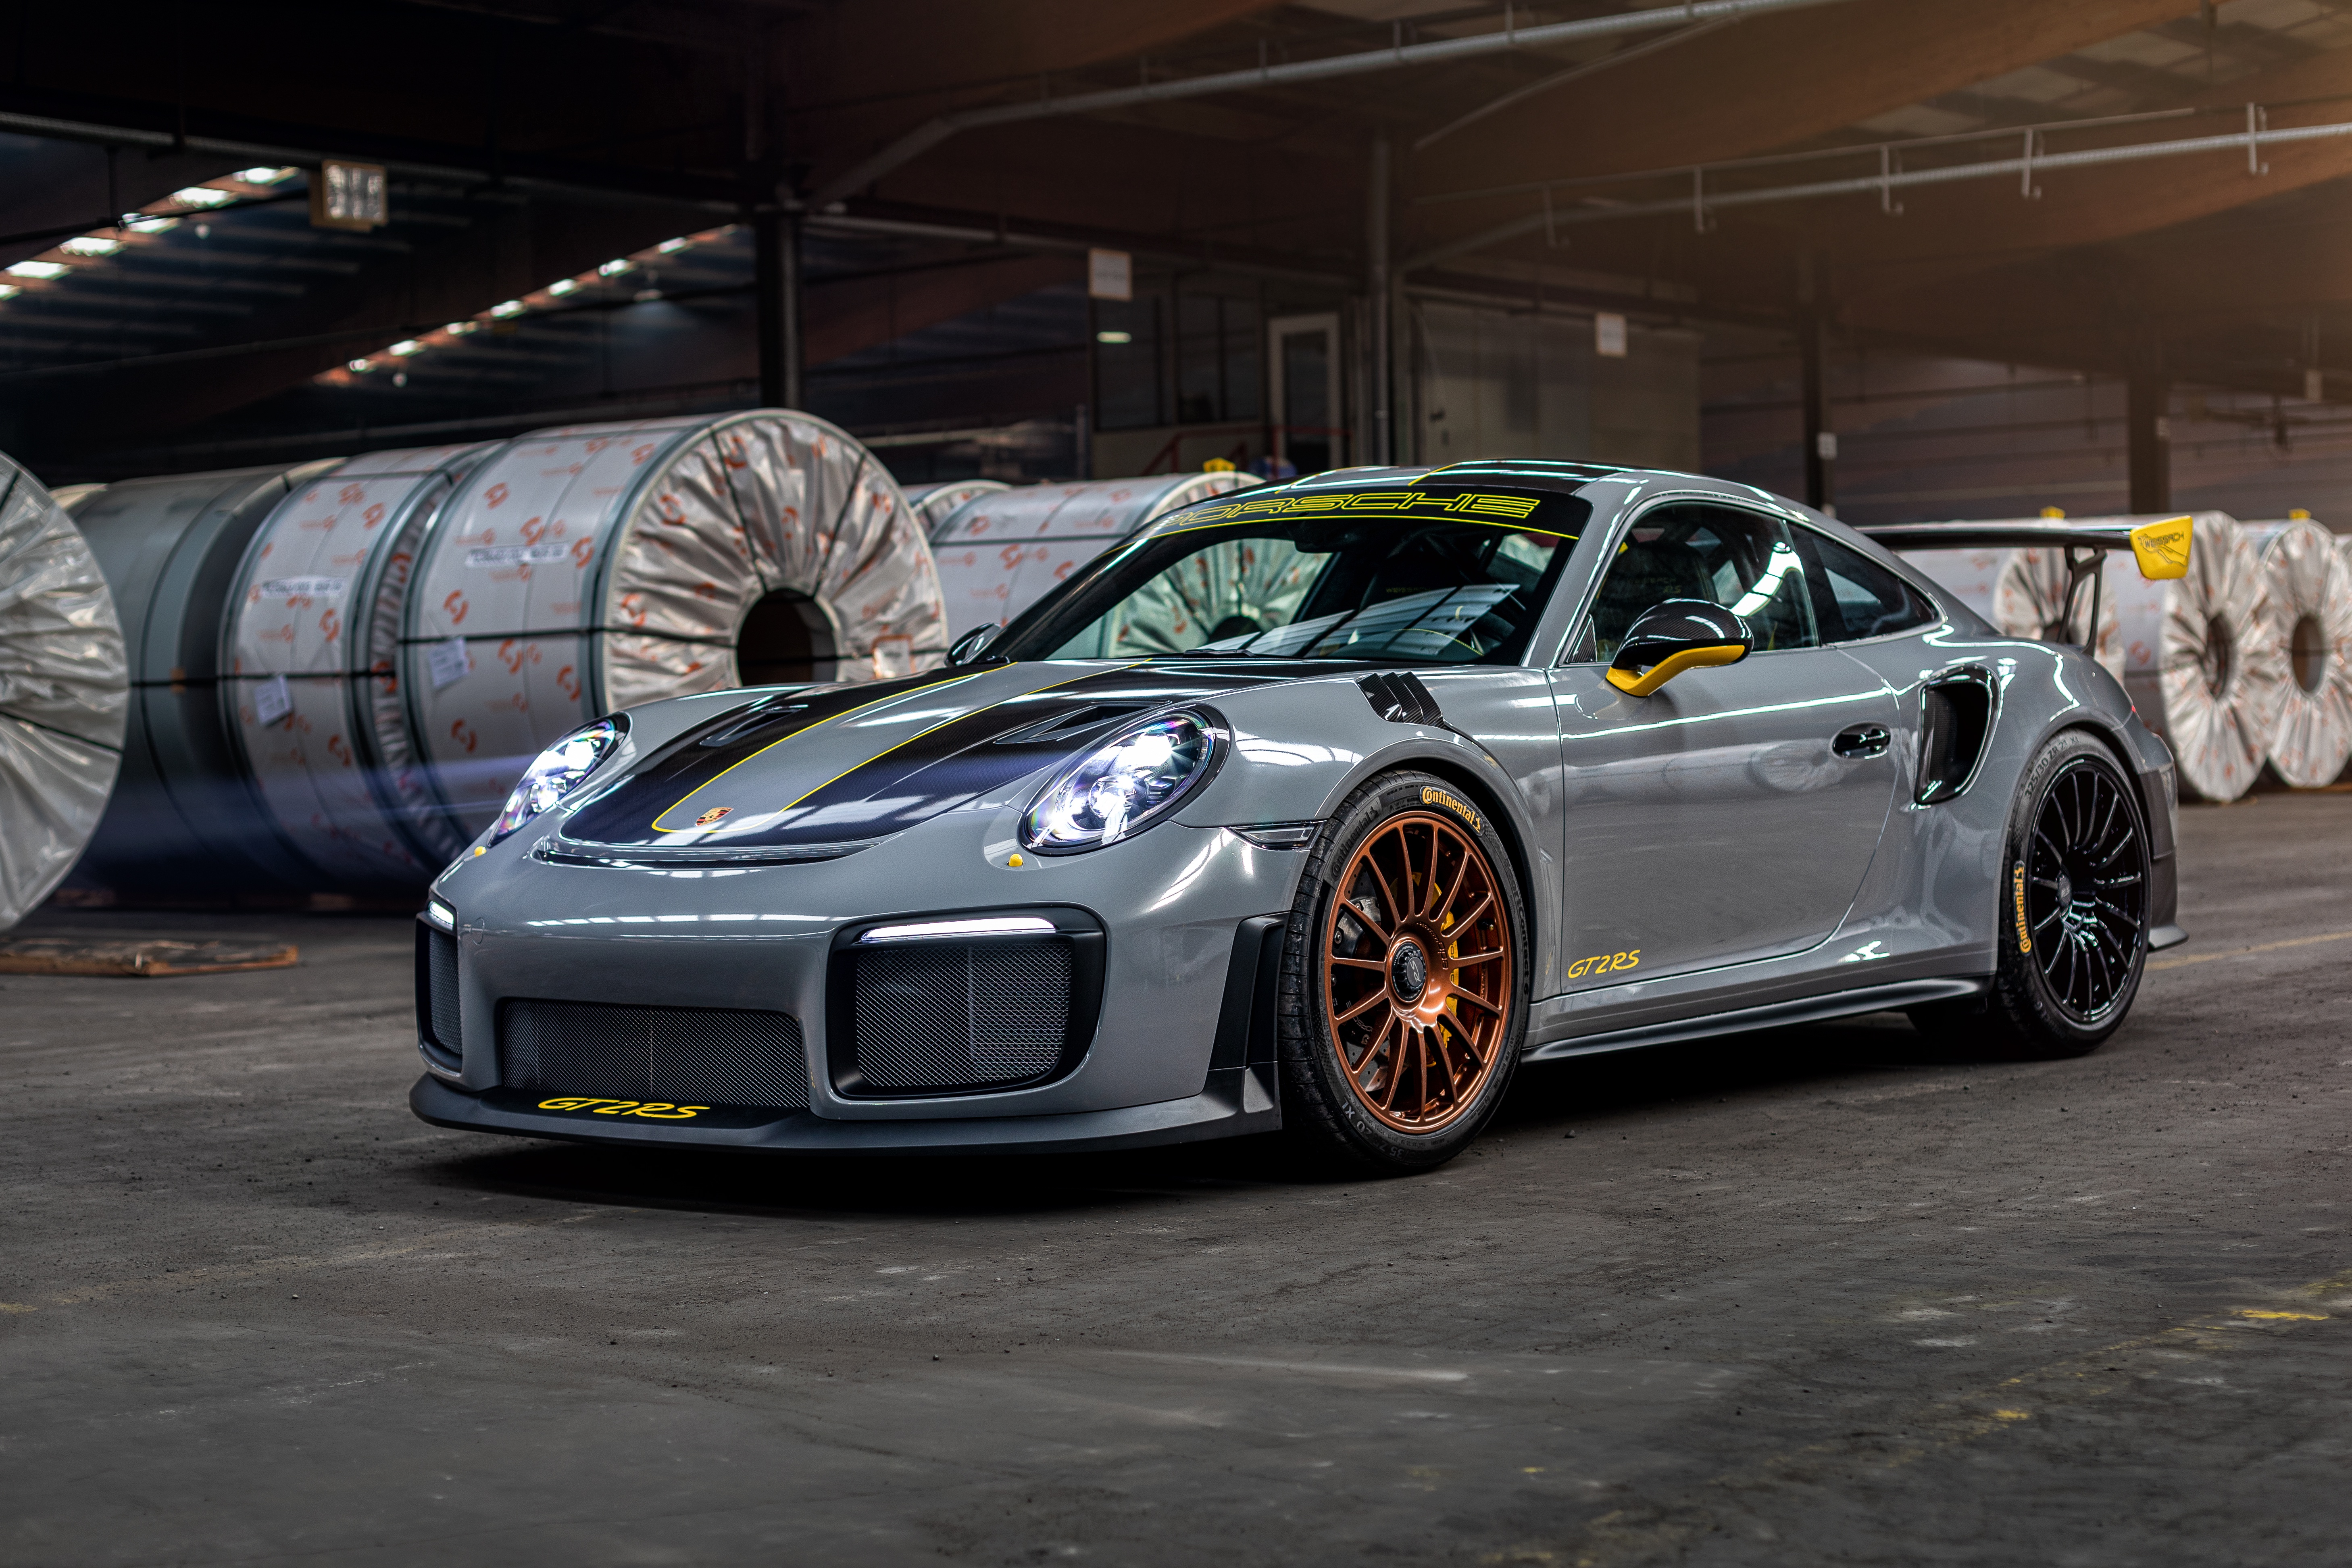 Descargar fondos de escritorio de Porsche 911 Gt2 Rs HD